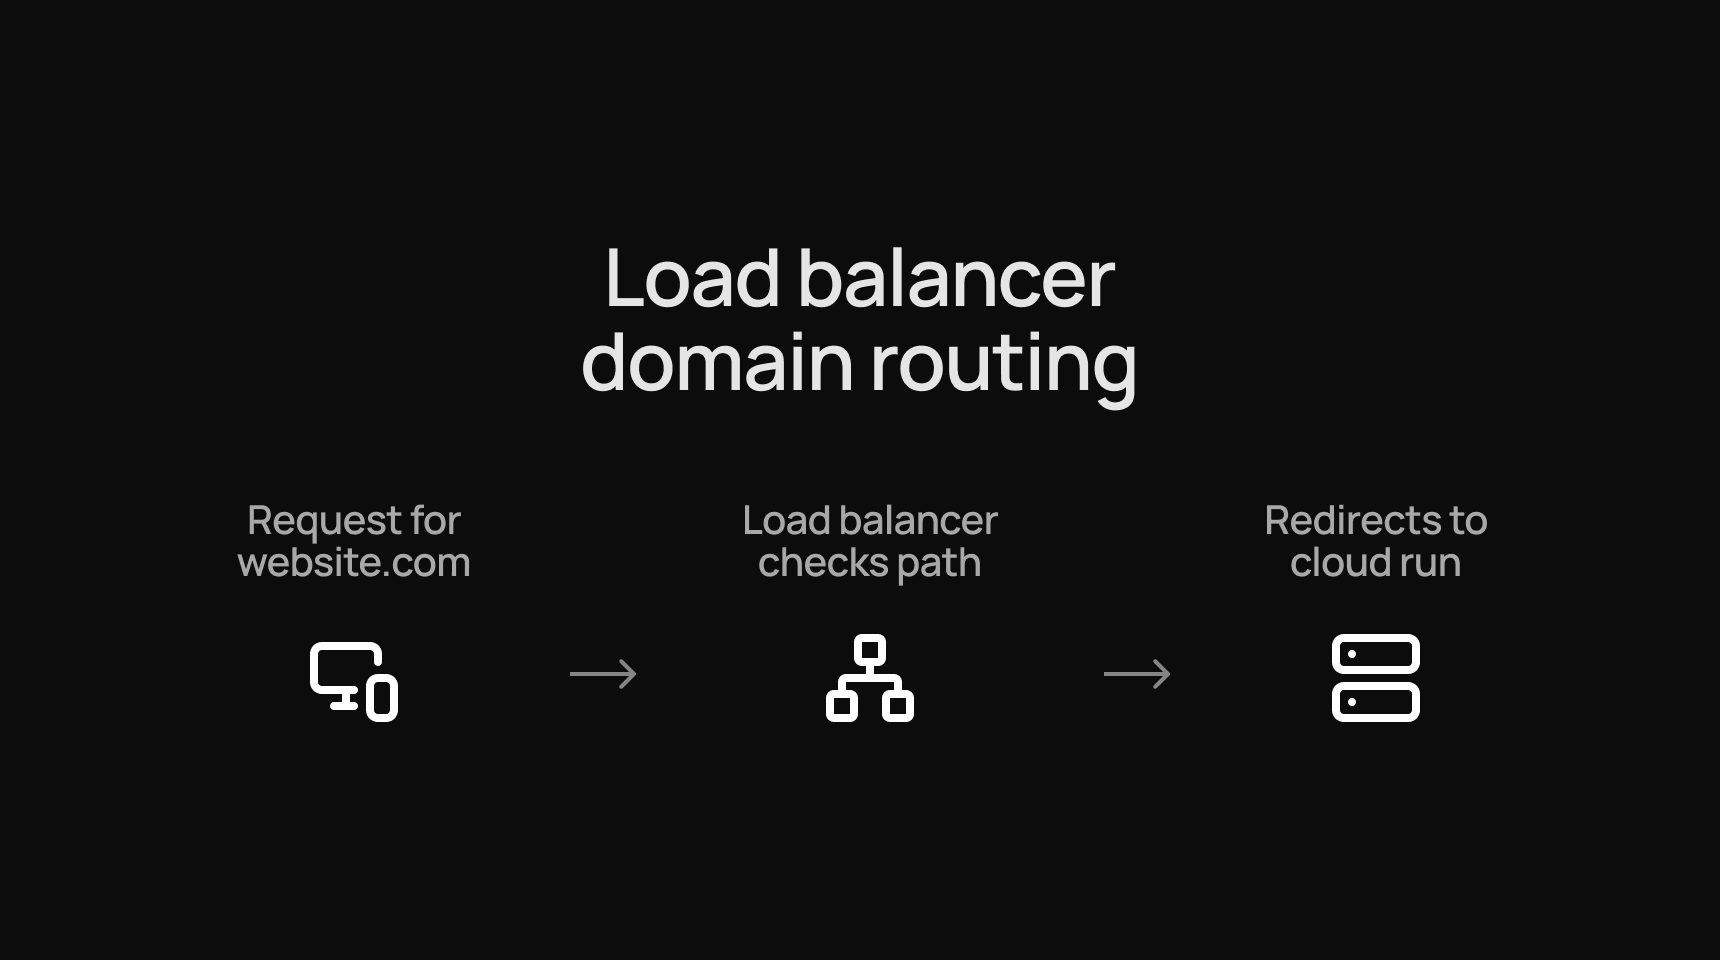 Load balancer domain routing